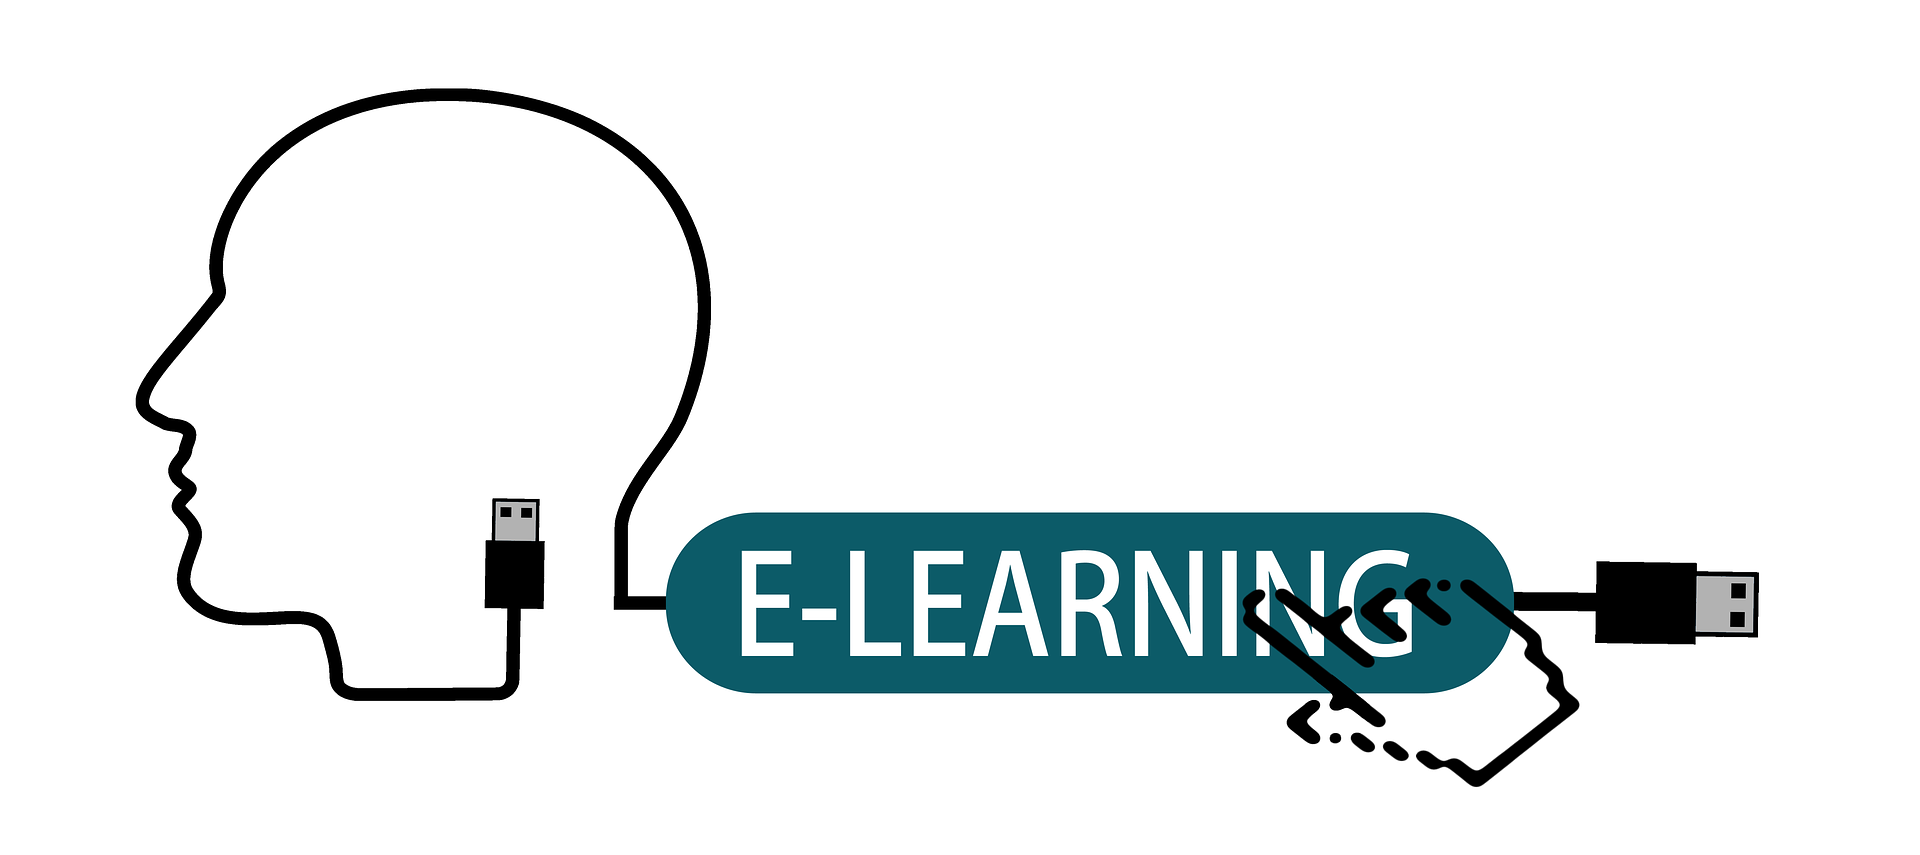 Enter E-learning